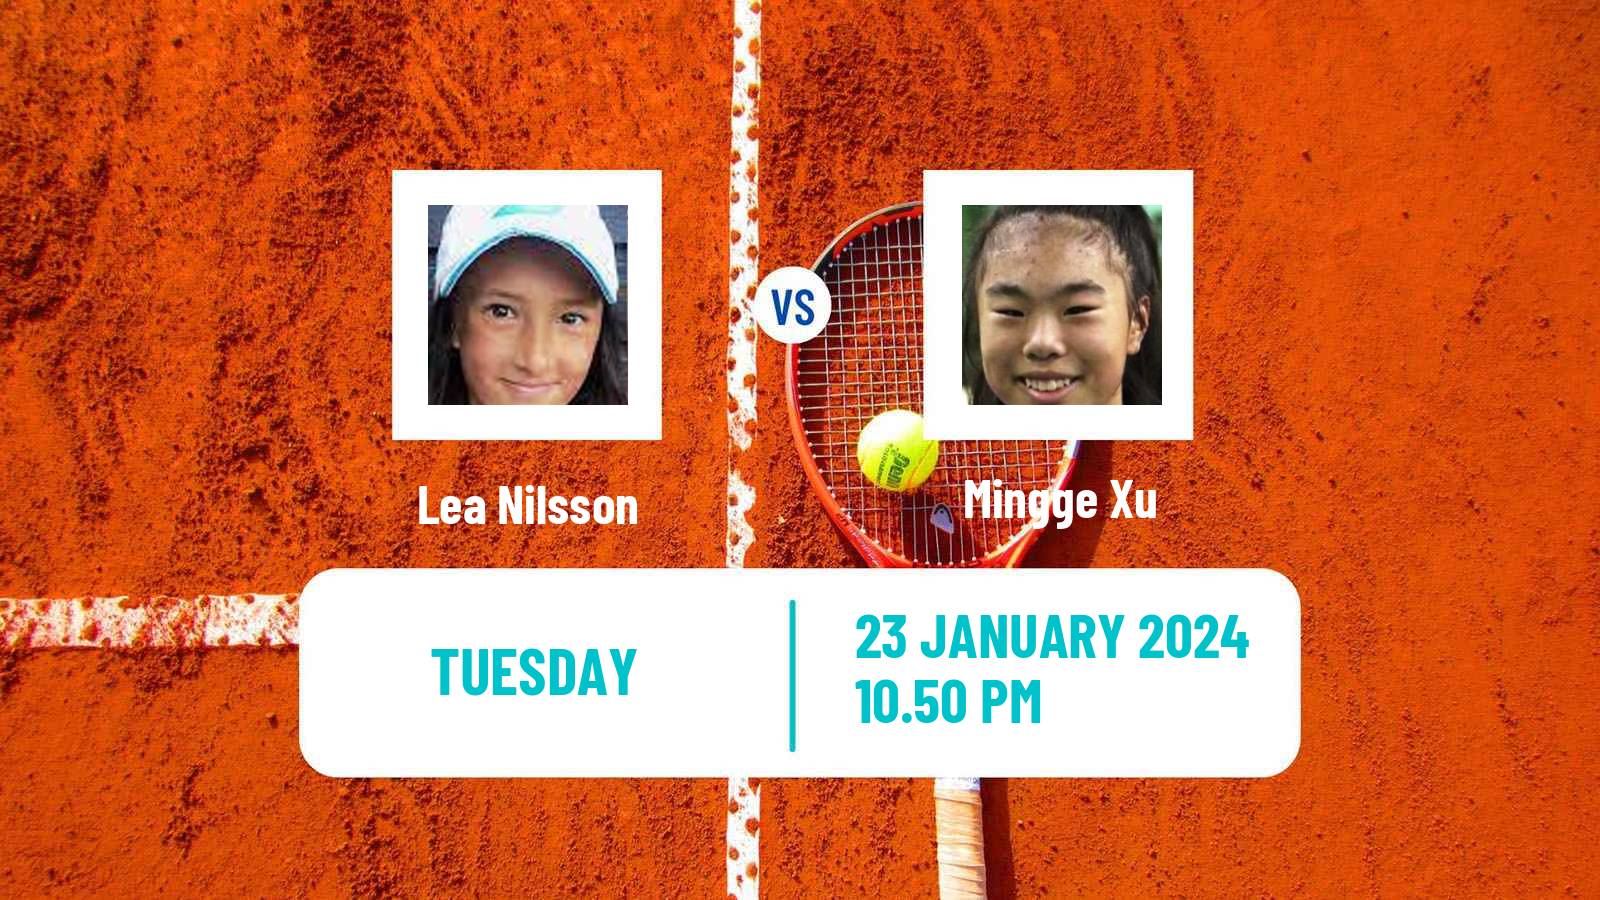 Tennis Girls Singles Australian Open Lea Nilsson - Mingge Xu